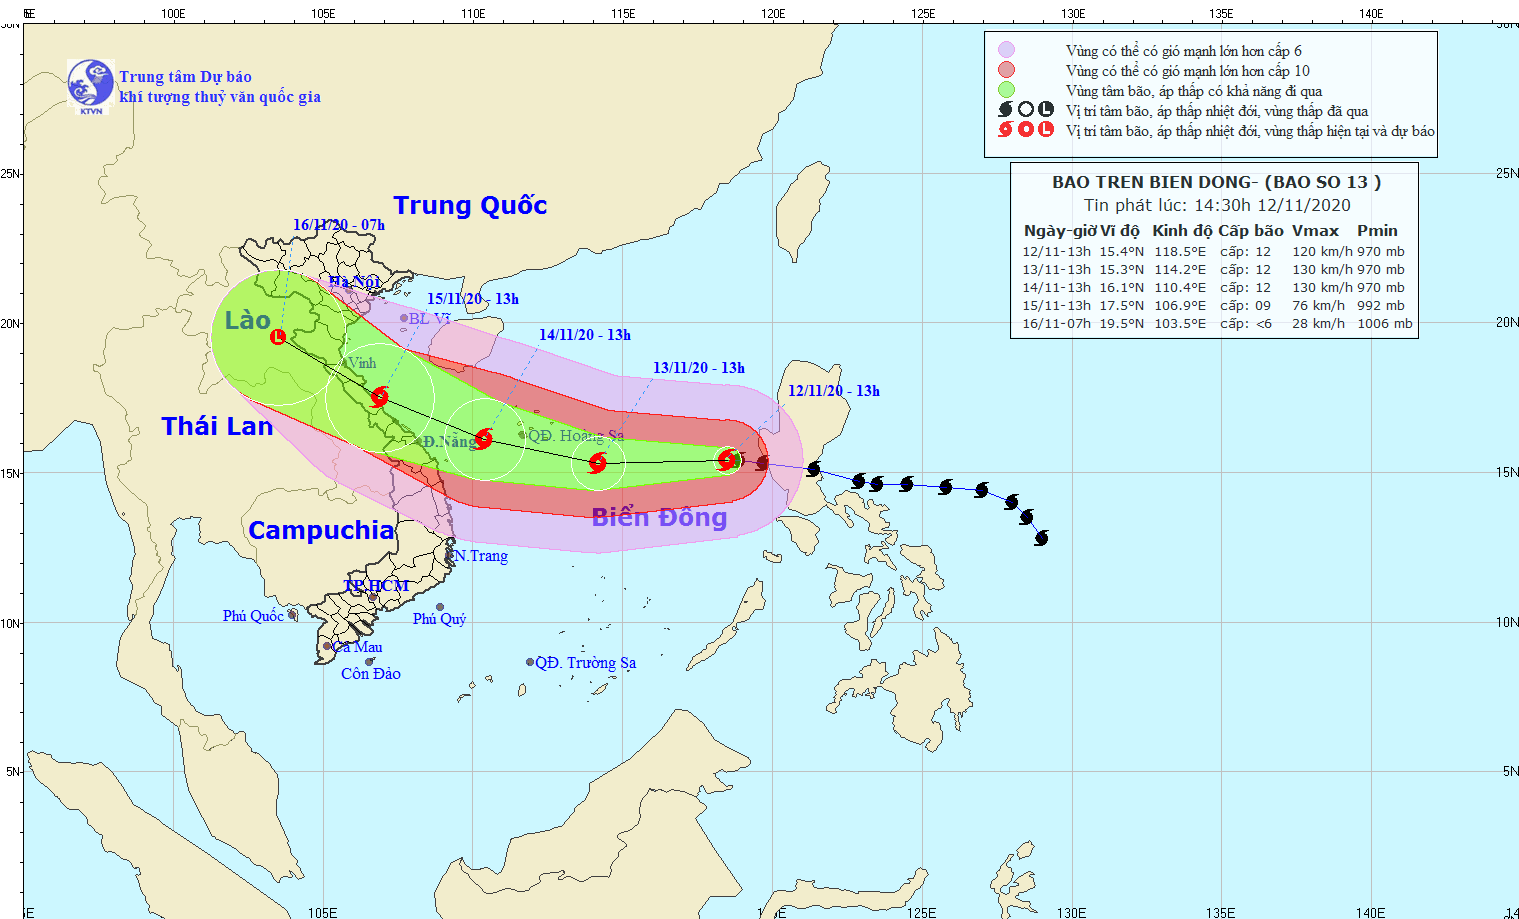 Ứng phó với bão Vamco, Đà Nẵng và Quảng Nam phát công điện khẩn - Ảnh 1.